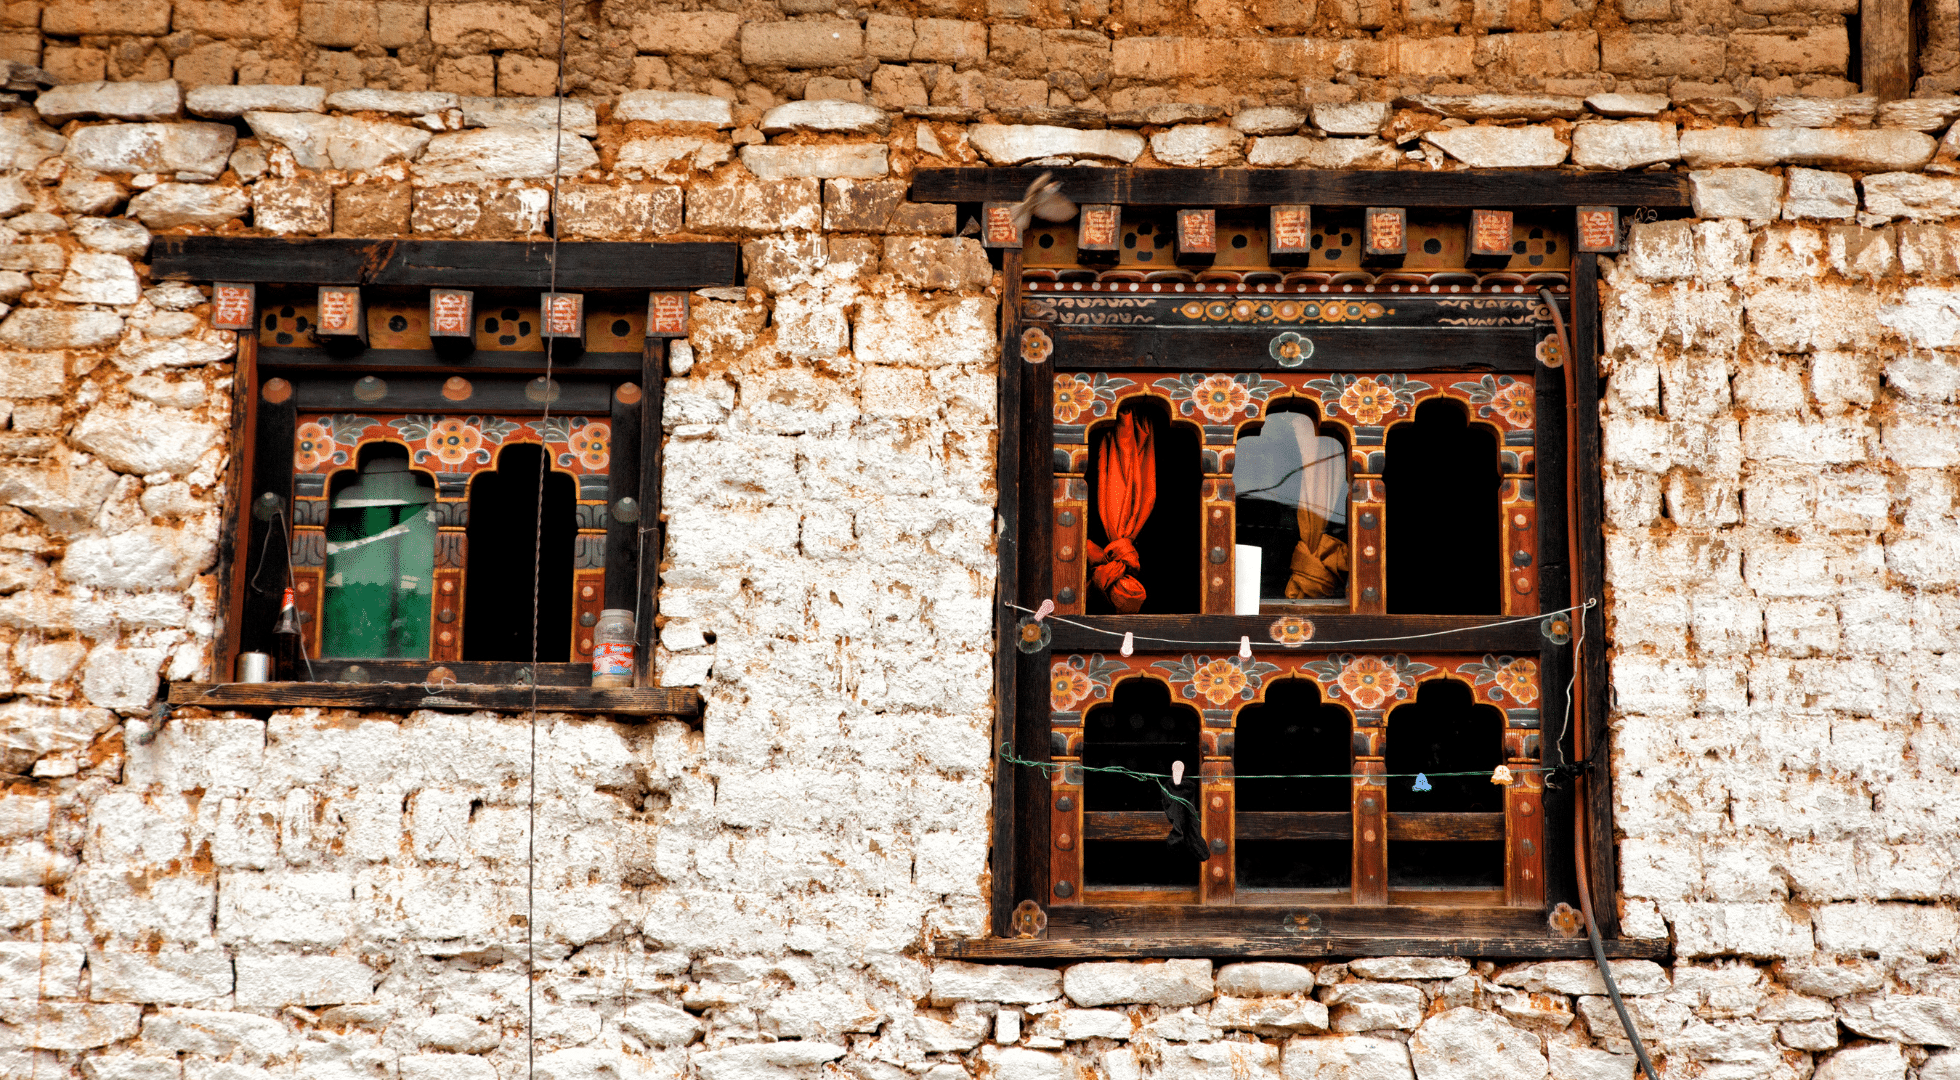 Bhutan 5